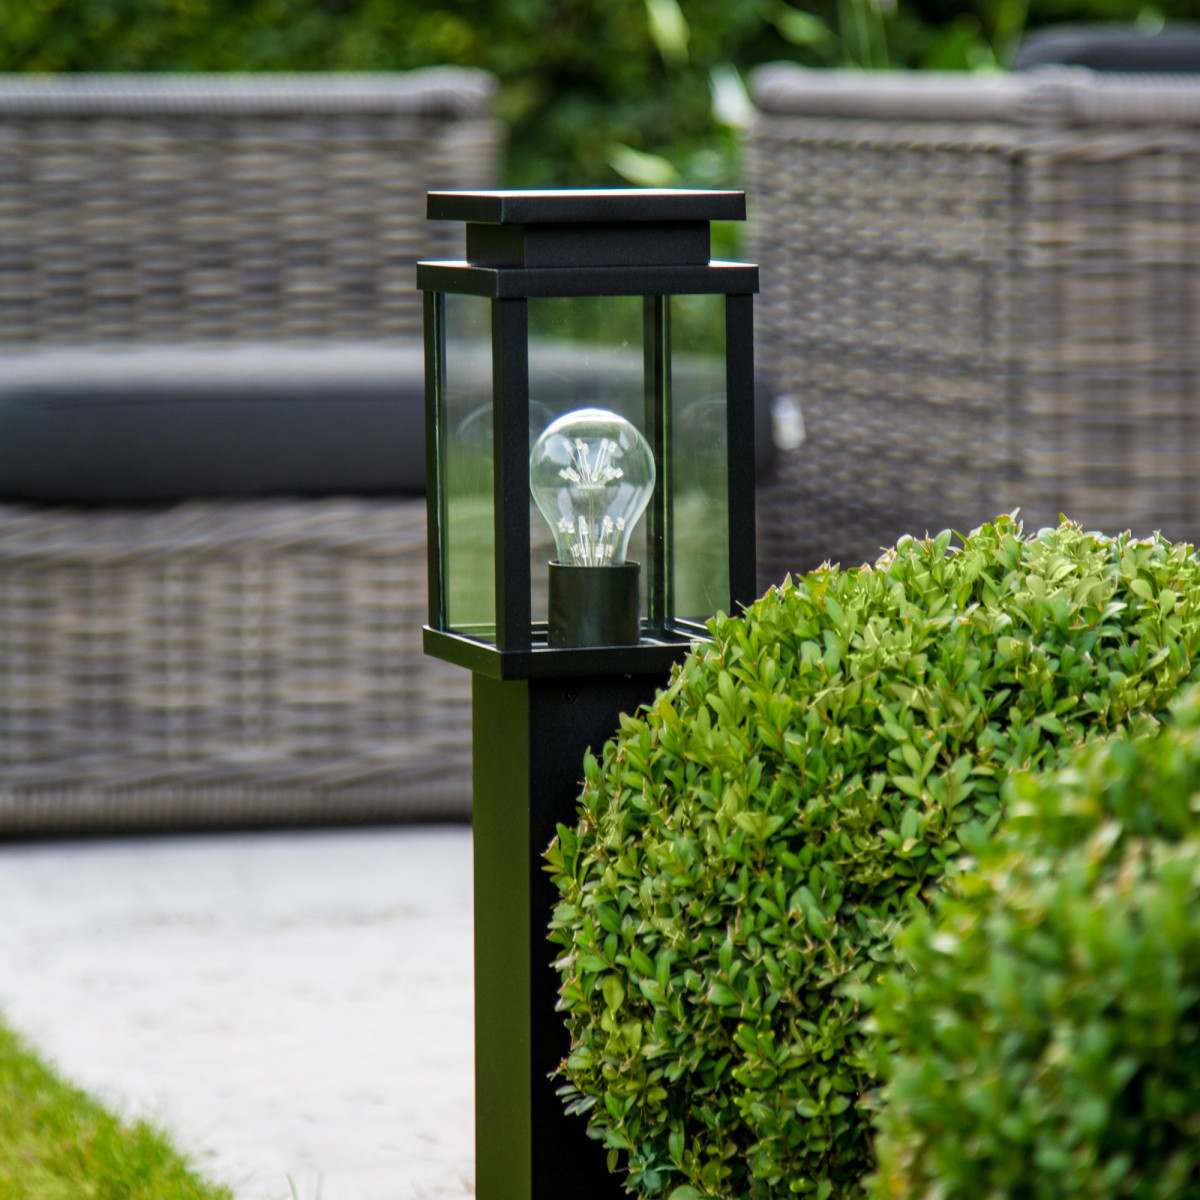 tuinverlichting, tuinlamp jersey terras lantaarn stijlvol strak klassieke tuinlamp een originele buitenverlichting van KS Verlichting